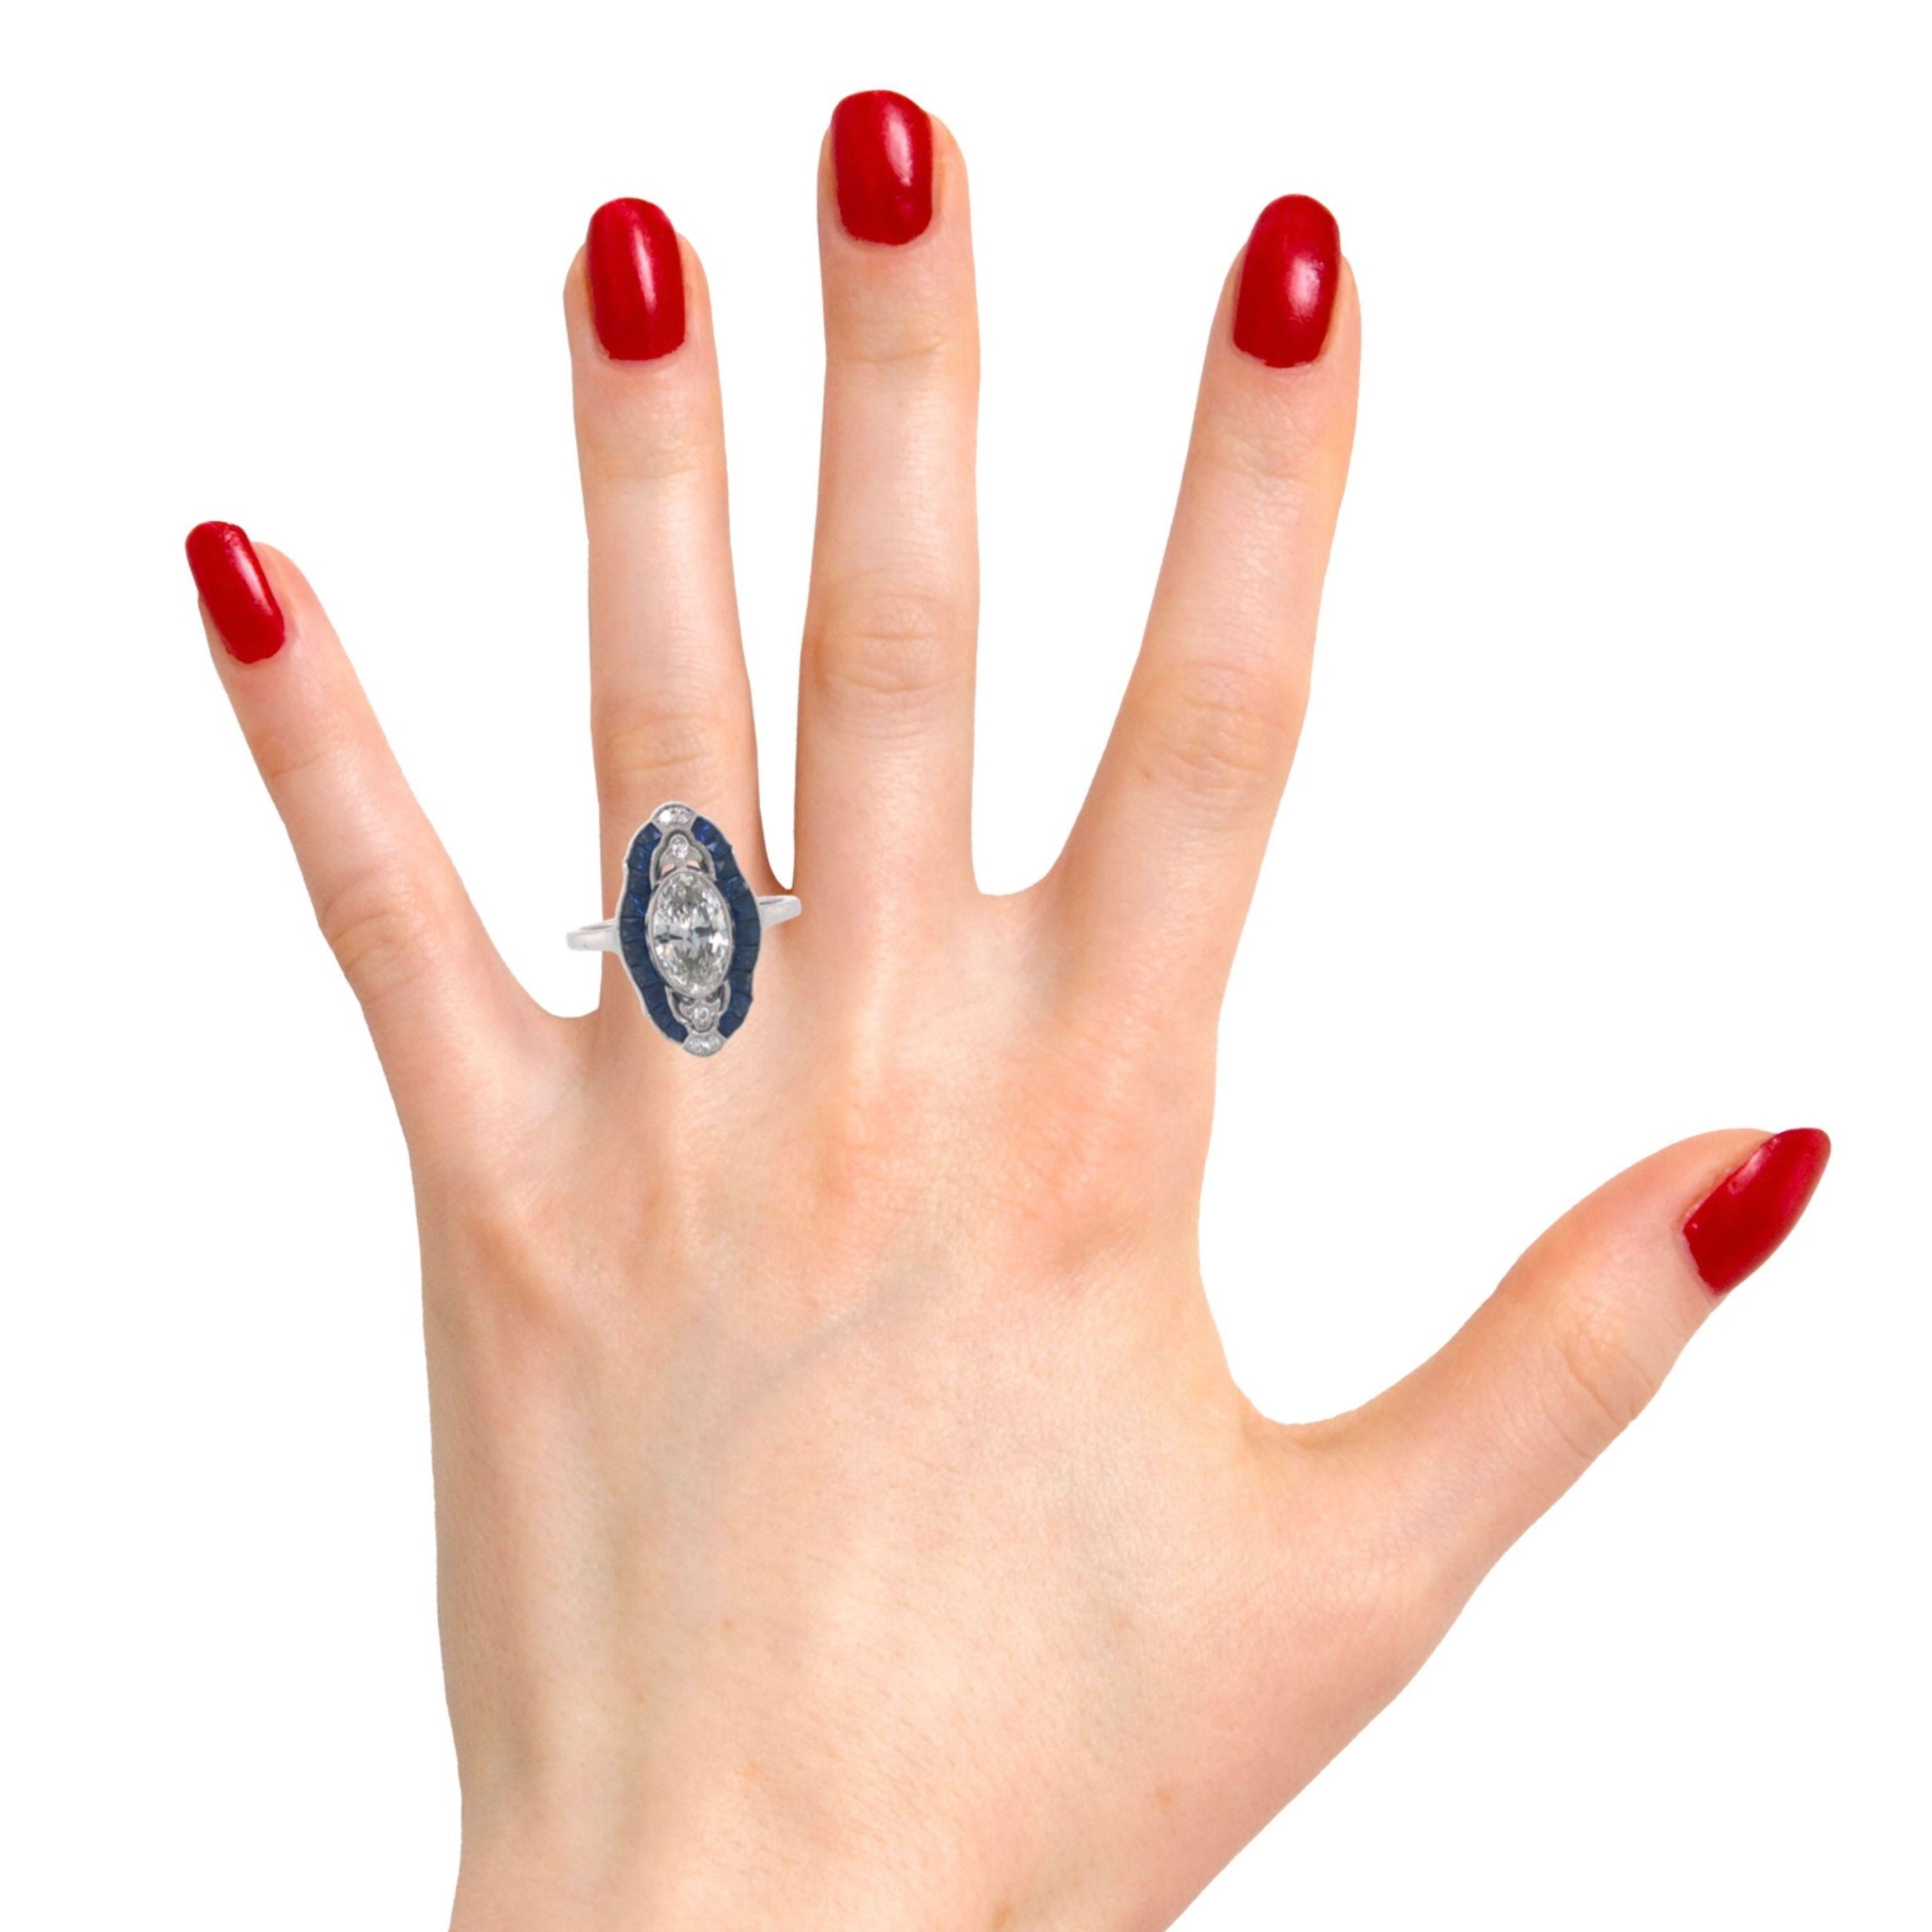 Der Ring im Art-déco-Stil mit einem ovalen Diamanten (1,04 CTS GIA F, SI1) und einem Saphir im französischen Schliff strahlt zeitlose Eleganz aus. Das verschlungene Design, charakteristisch für die Art-Déco-Ära, bietet einen einzigartigen und